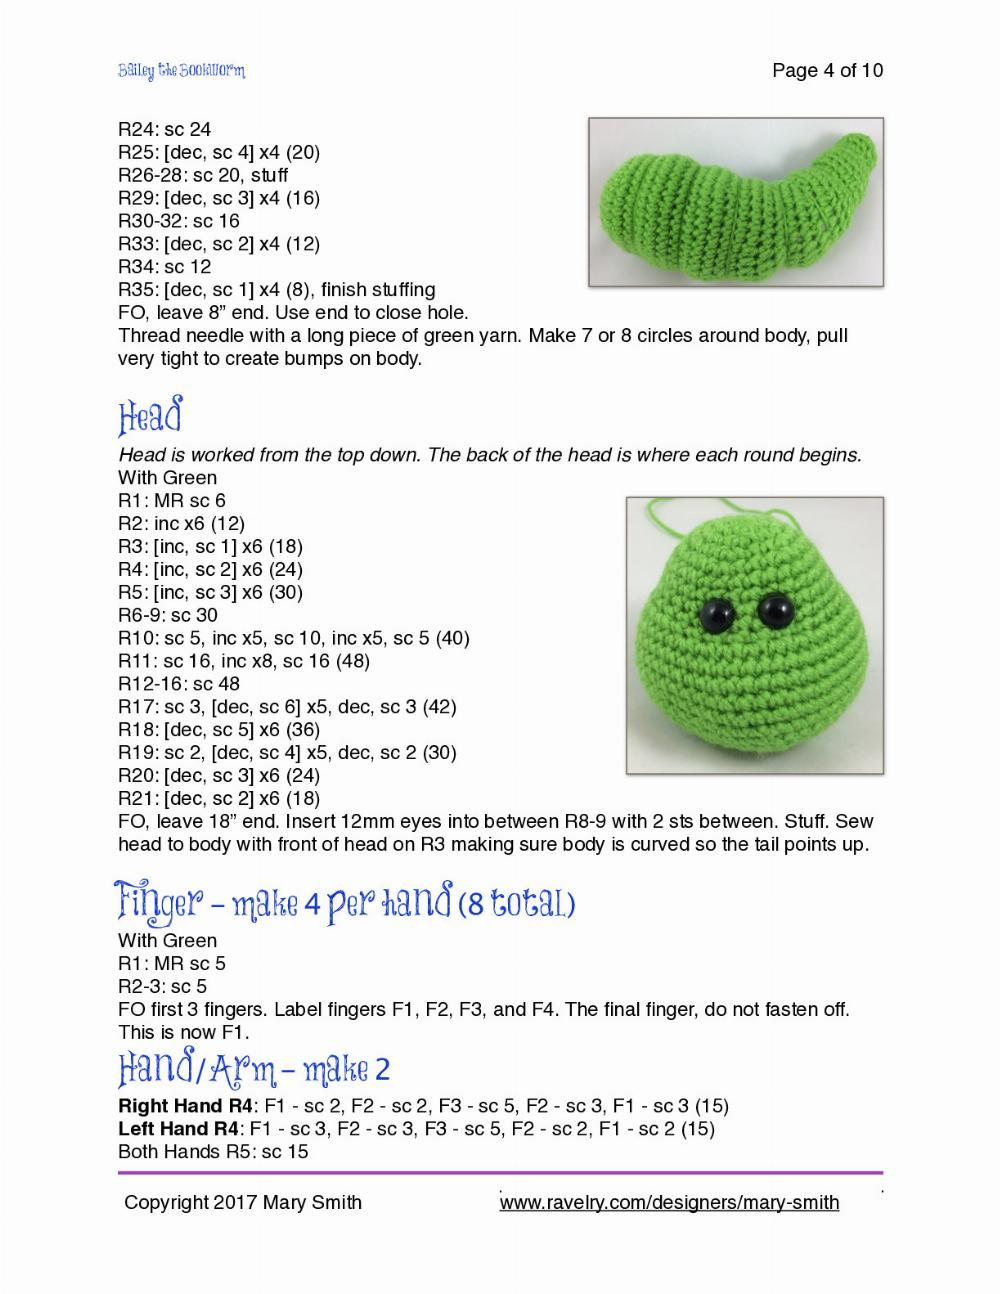 Bailey the Bookworm crochet Pattern